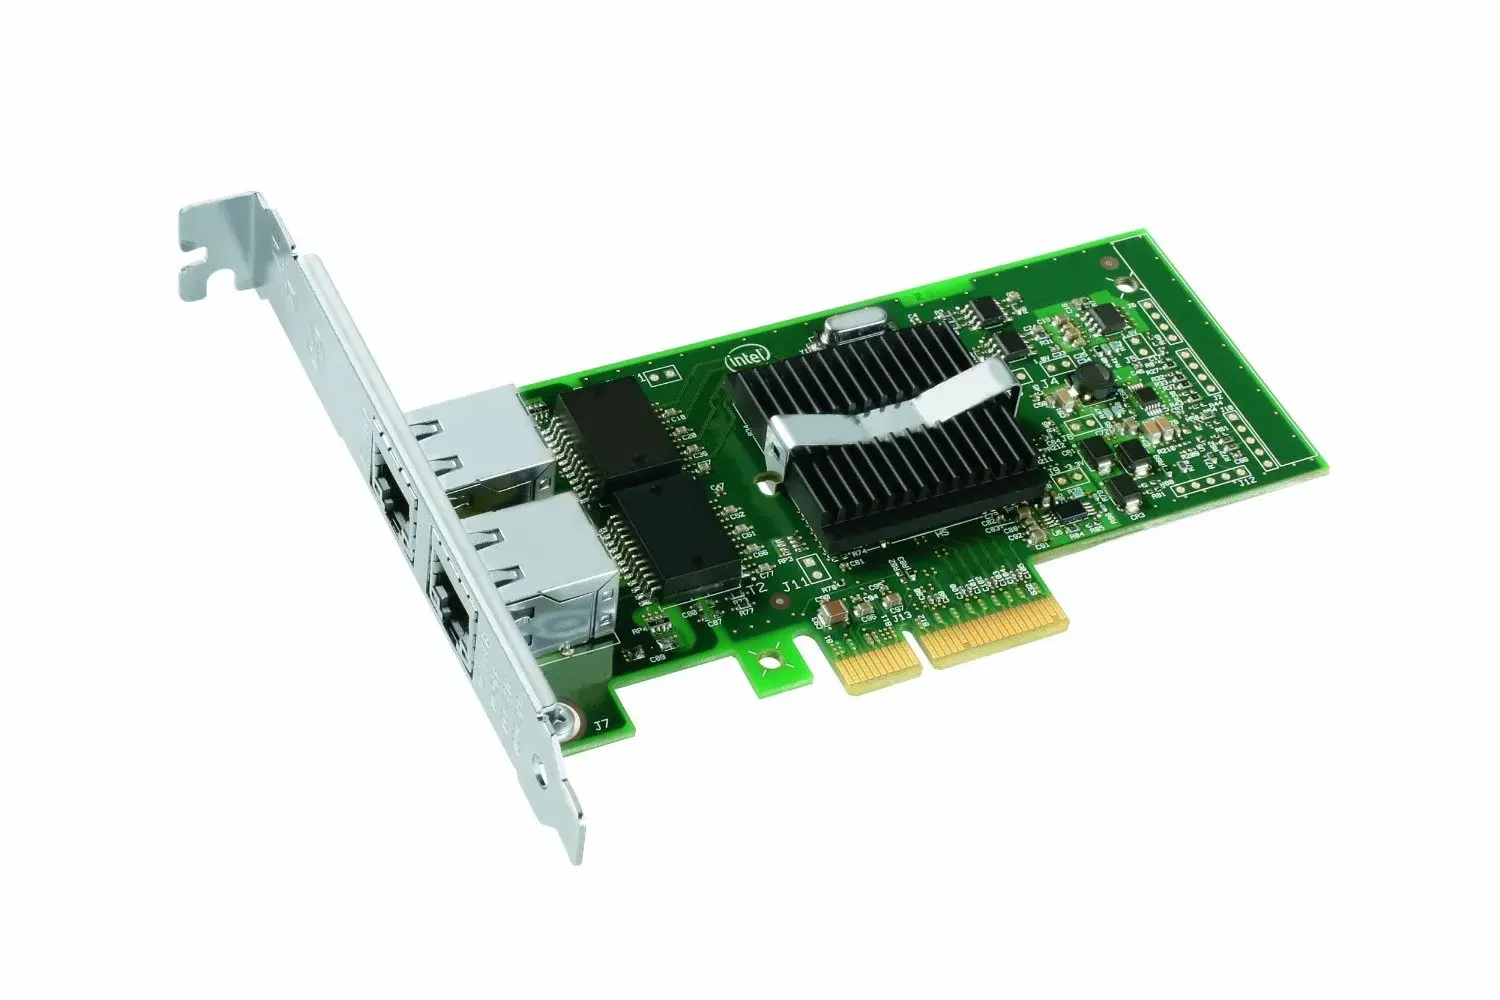 A92111-004 Intel PRO/1000 MT PCI-x Dual Port Server Adapter